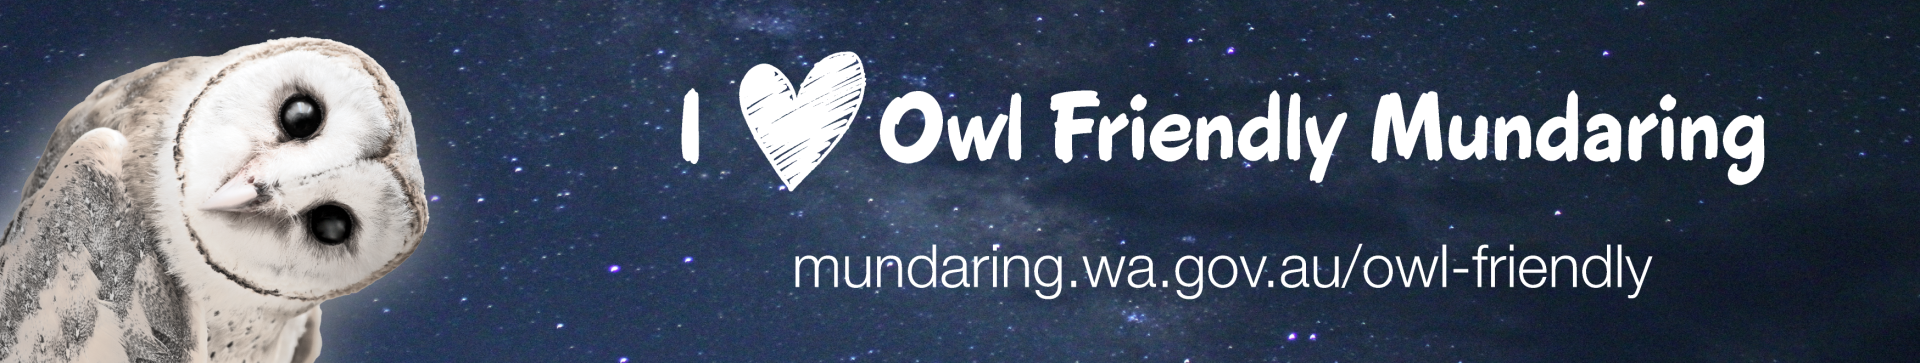 Car Bumper Sticker that says Owl Friendly Mundaring 